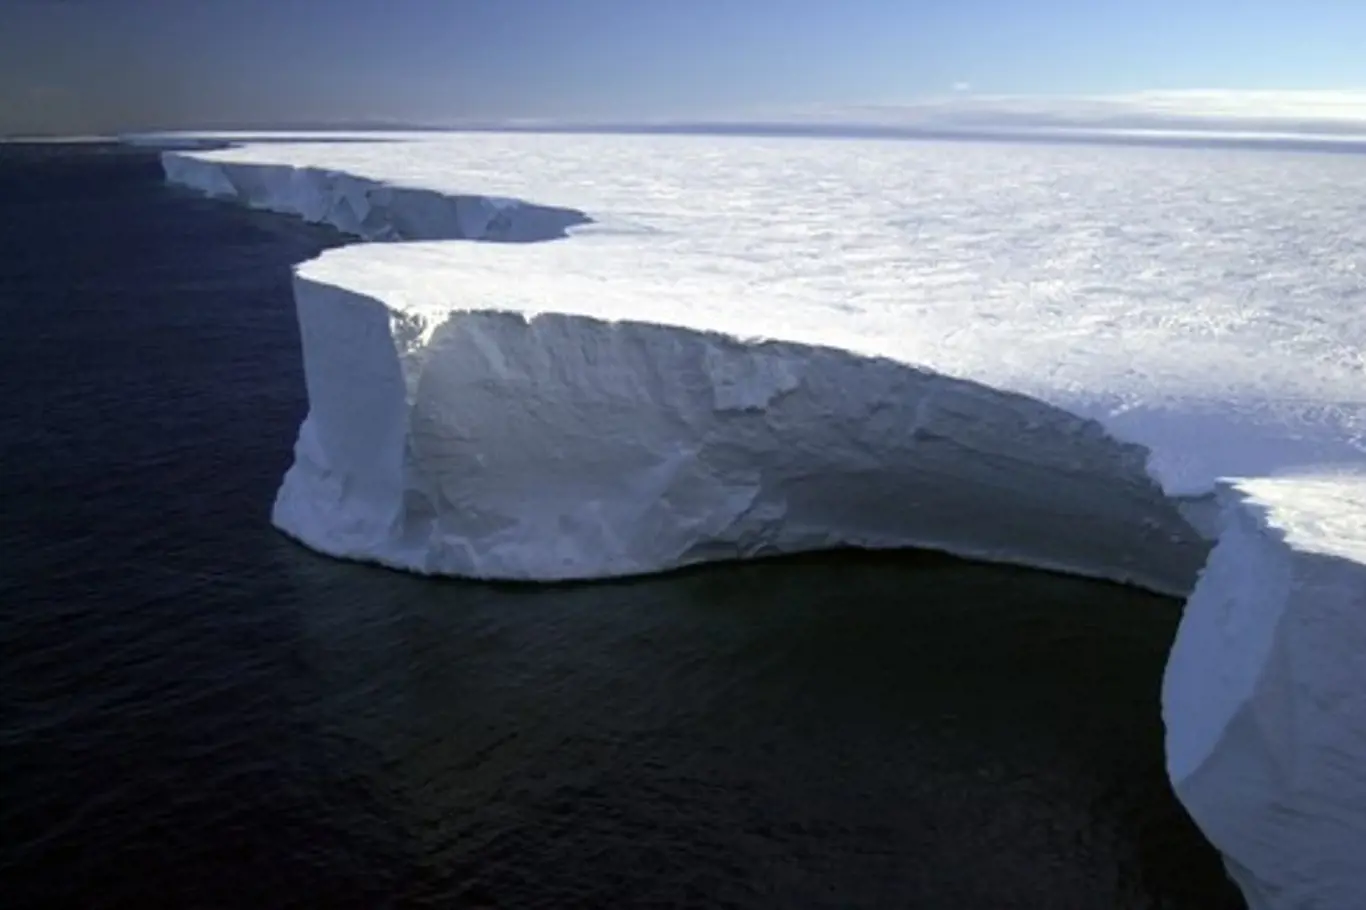 Rossův šelfový ledovec